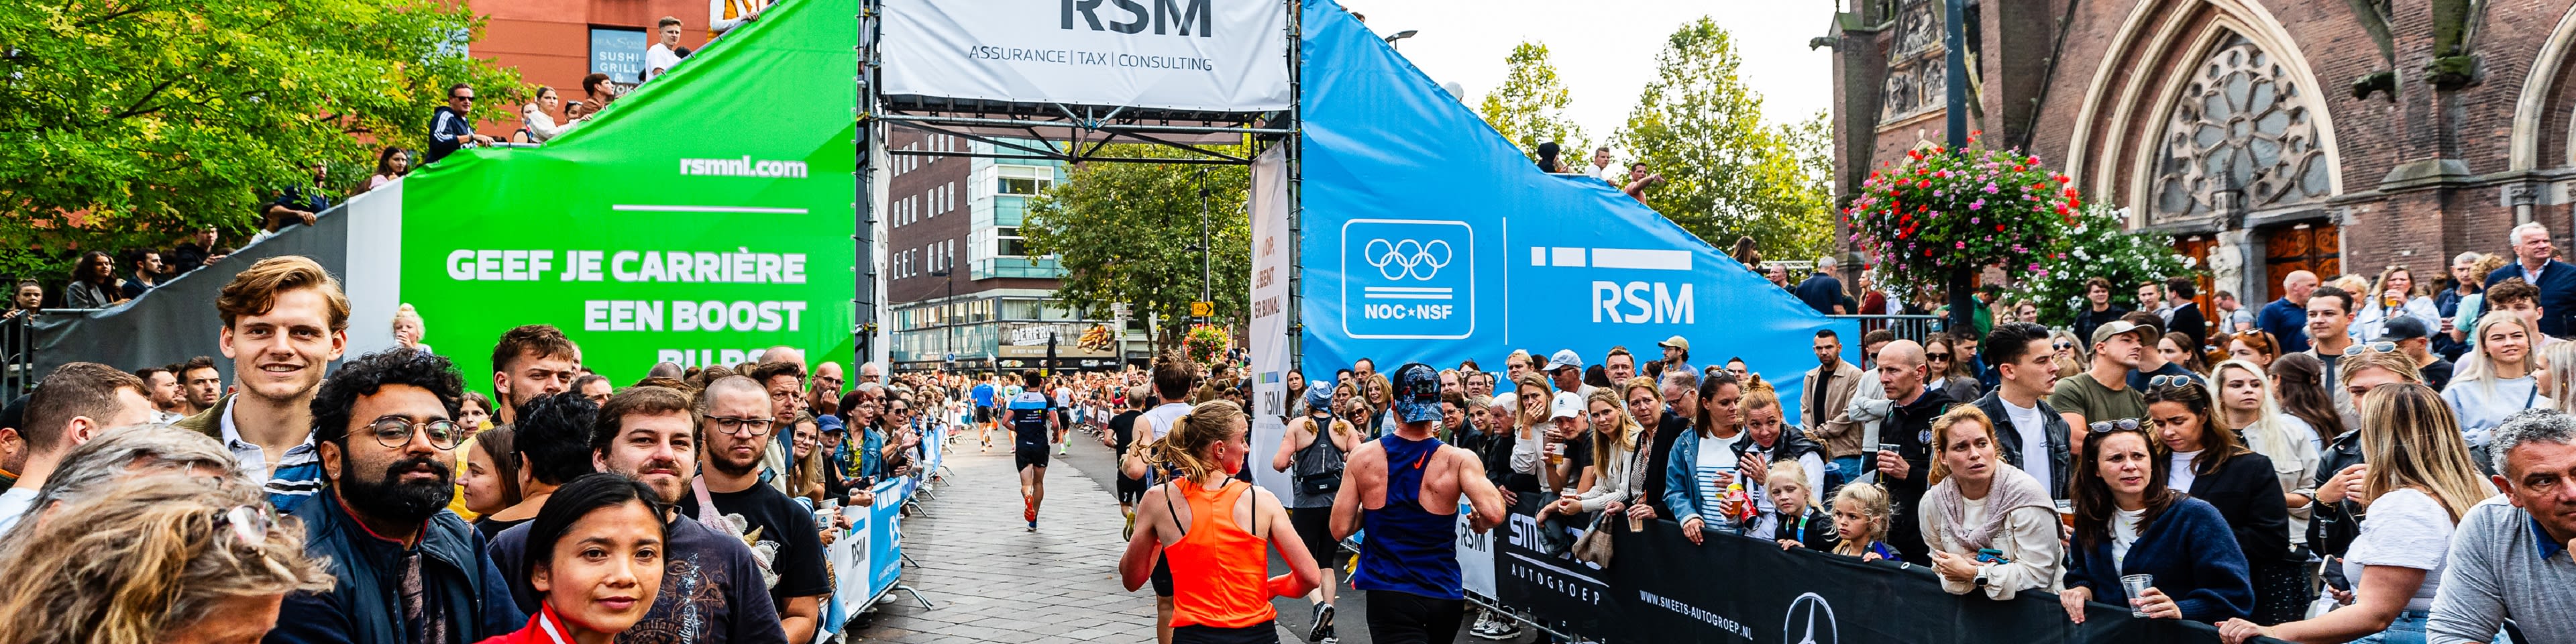 RSM naamgever kwart marathon bij jubileum-editie ASML Marathon Eindhoven